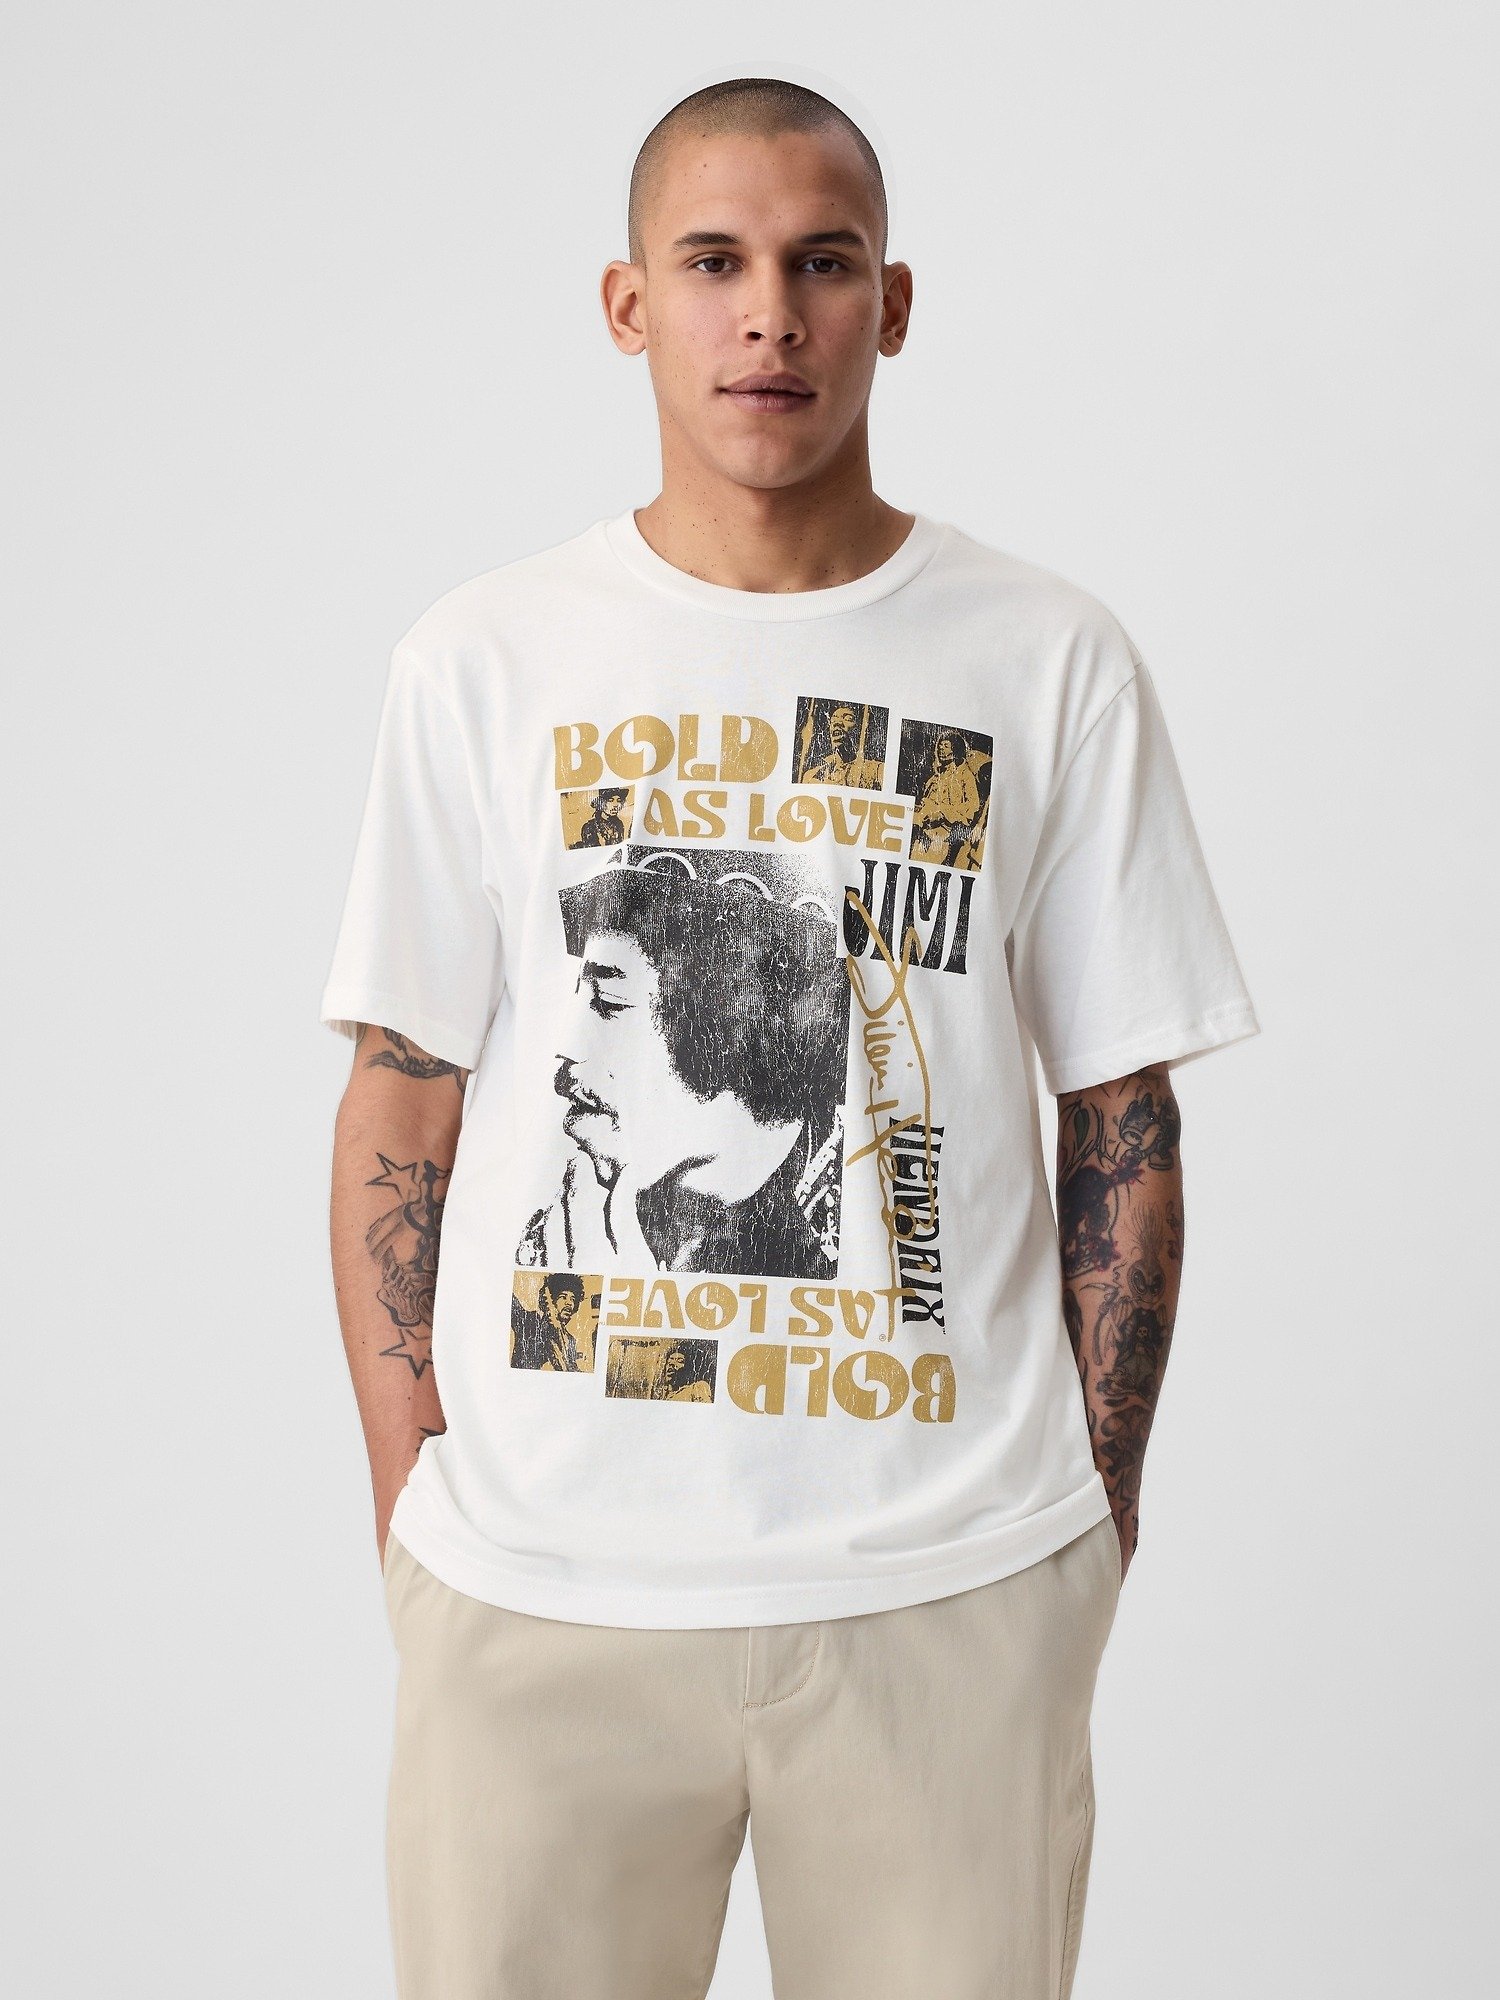 Jimi Hendrix Grafikli T-Shirt product image